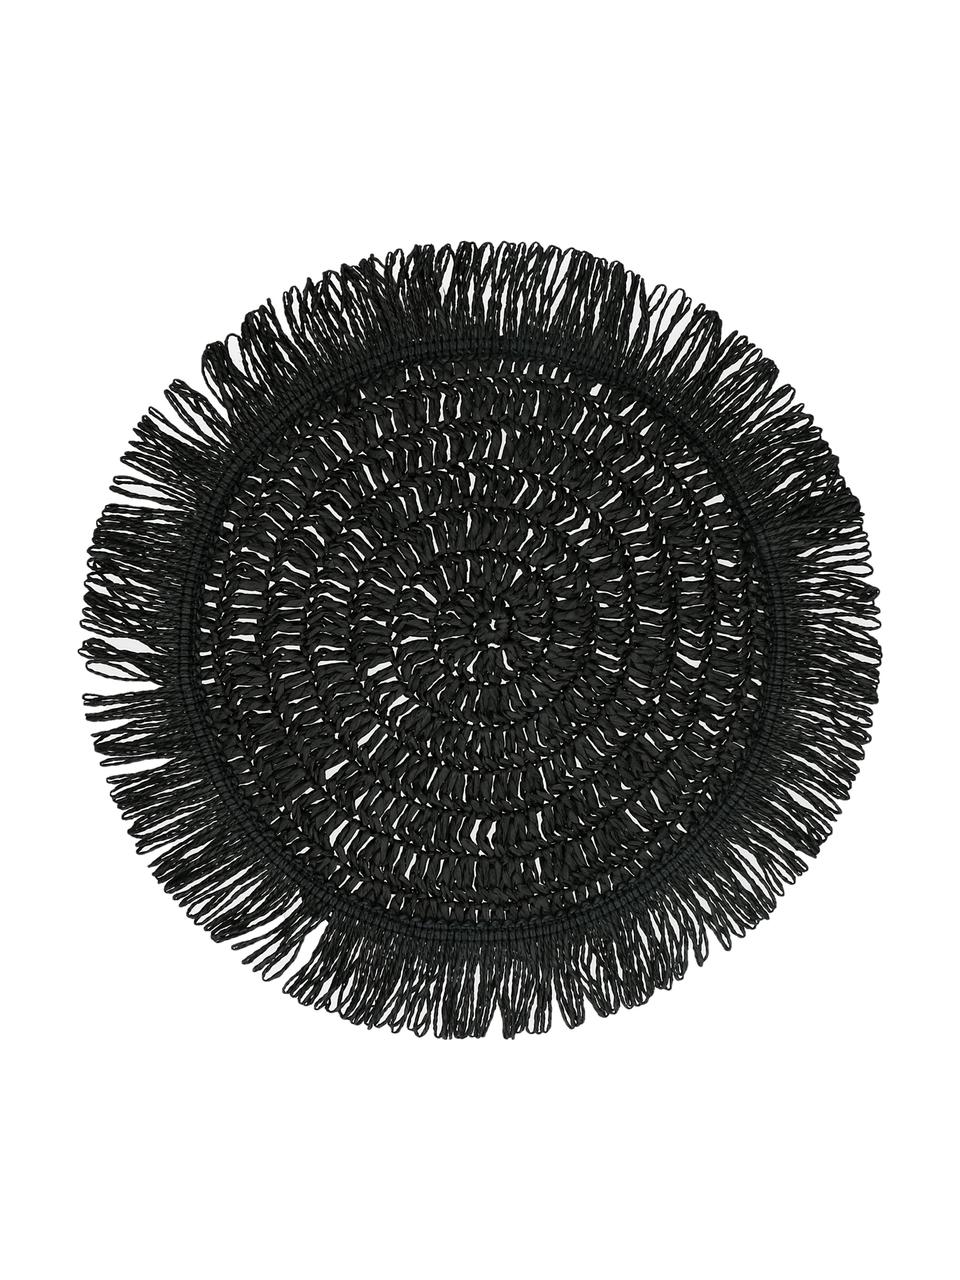 Čierne okrúhle prestieranie so strapcami Gyula. 2 ks, Papierové vlákna, Čierna, Ø 40 cm